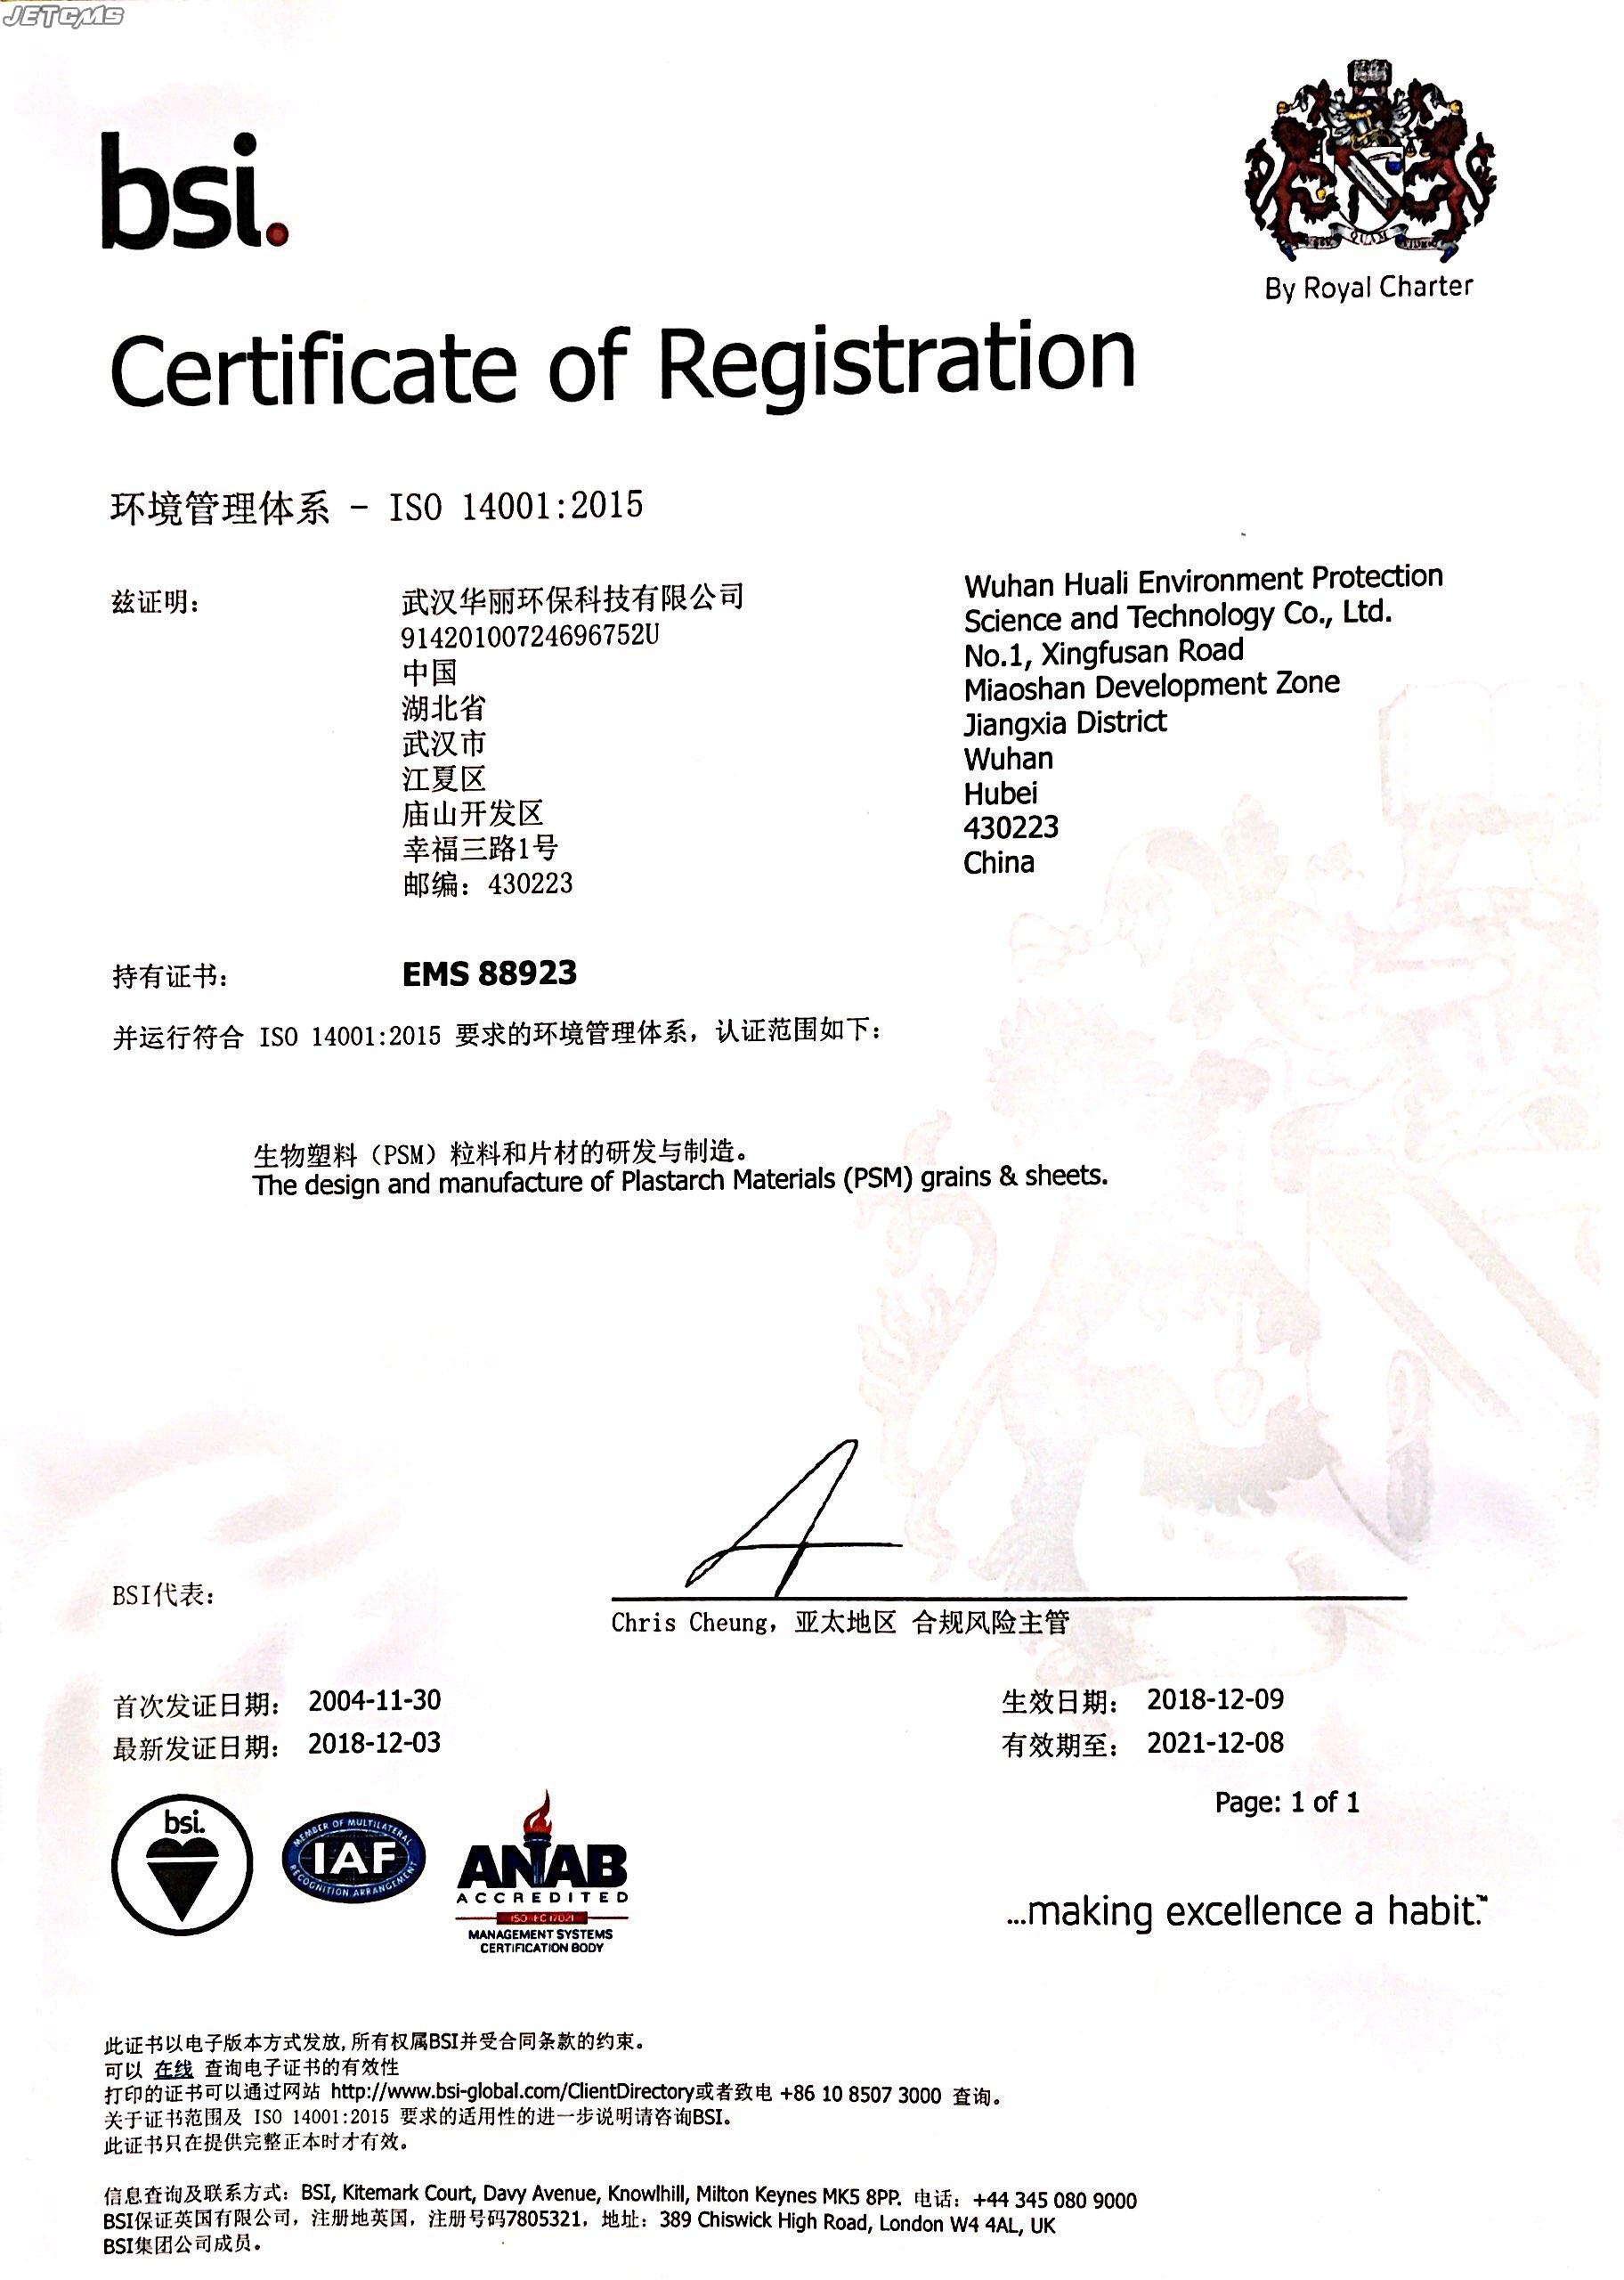 ISO14001環境管理體系認證